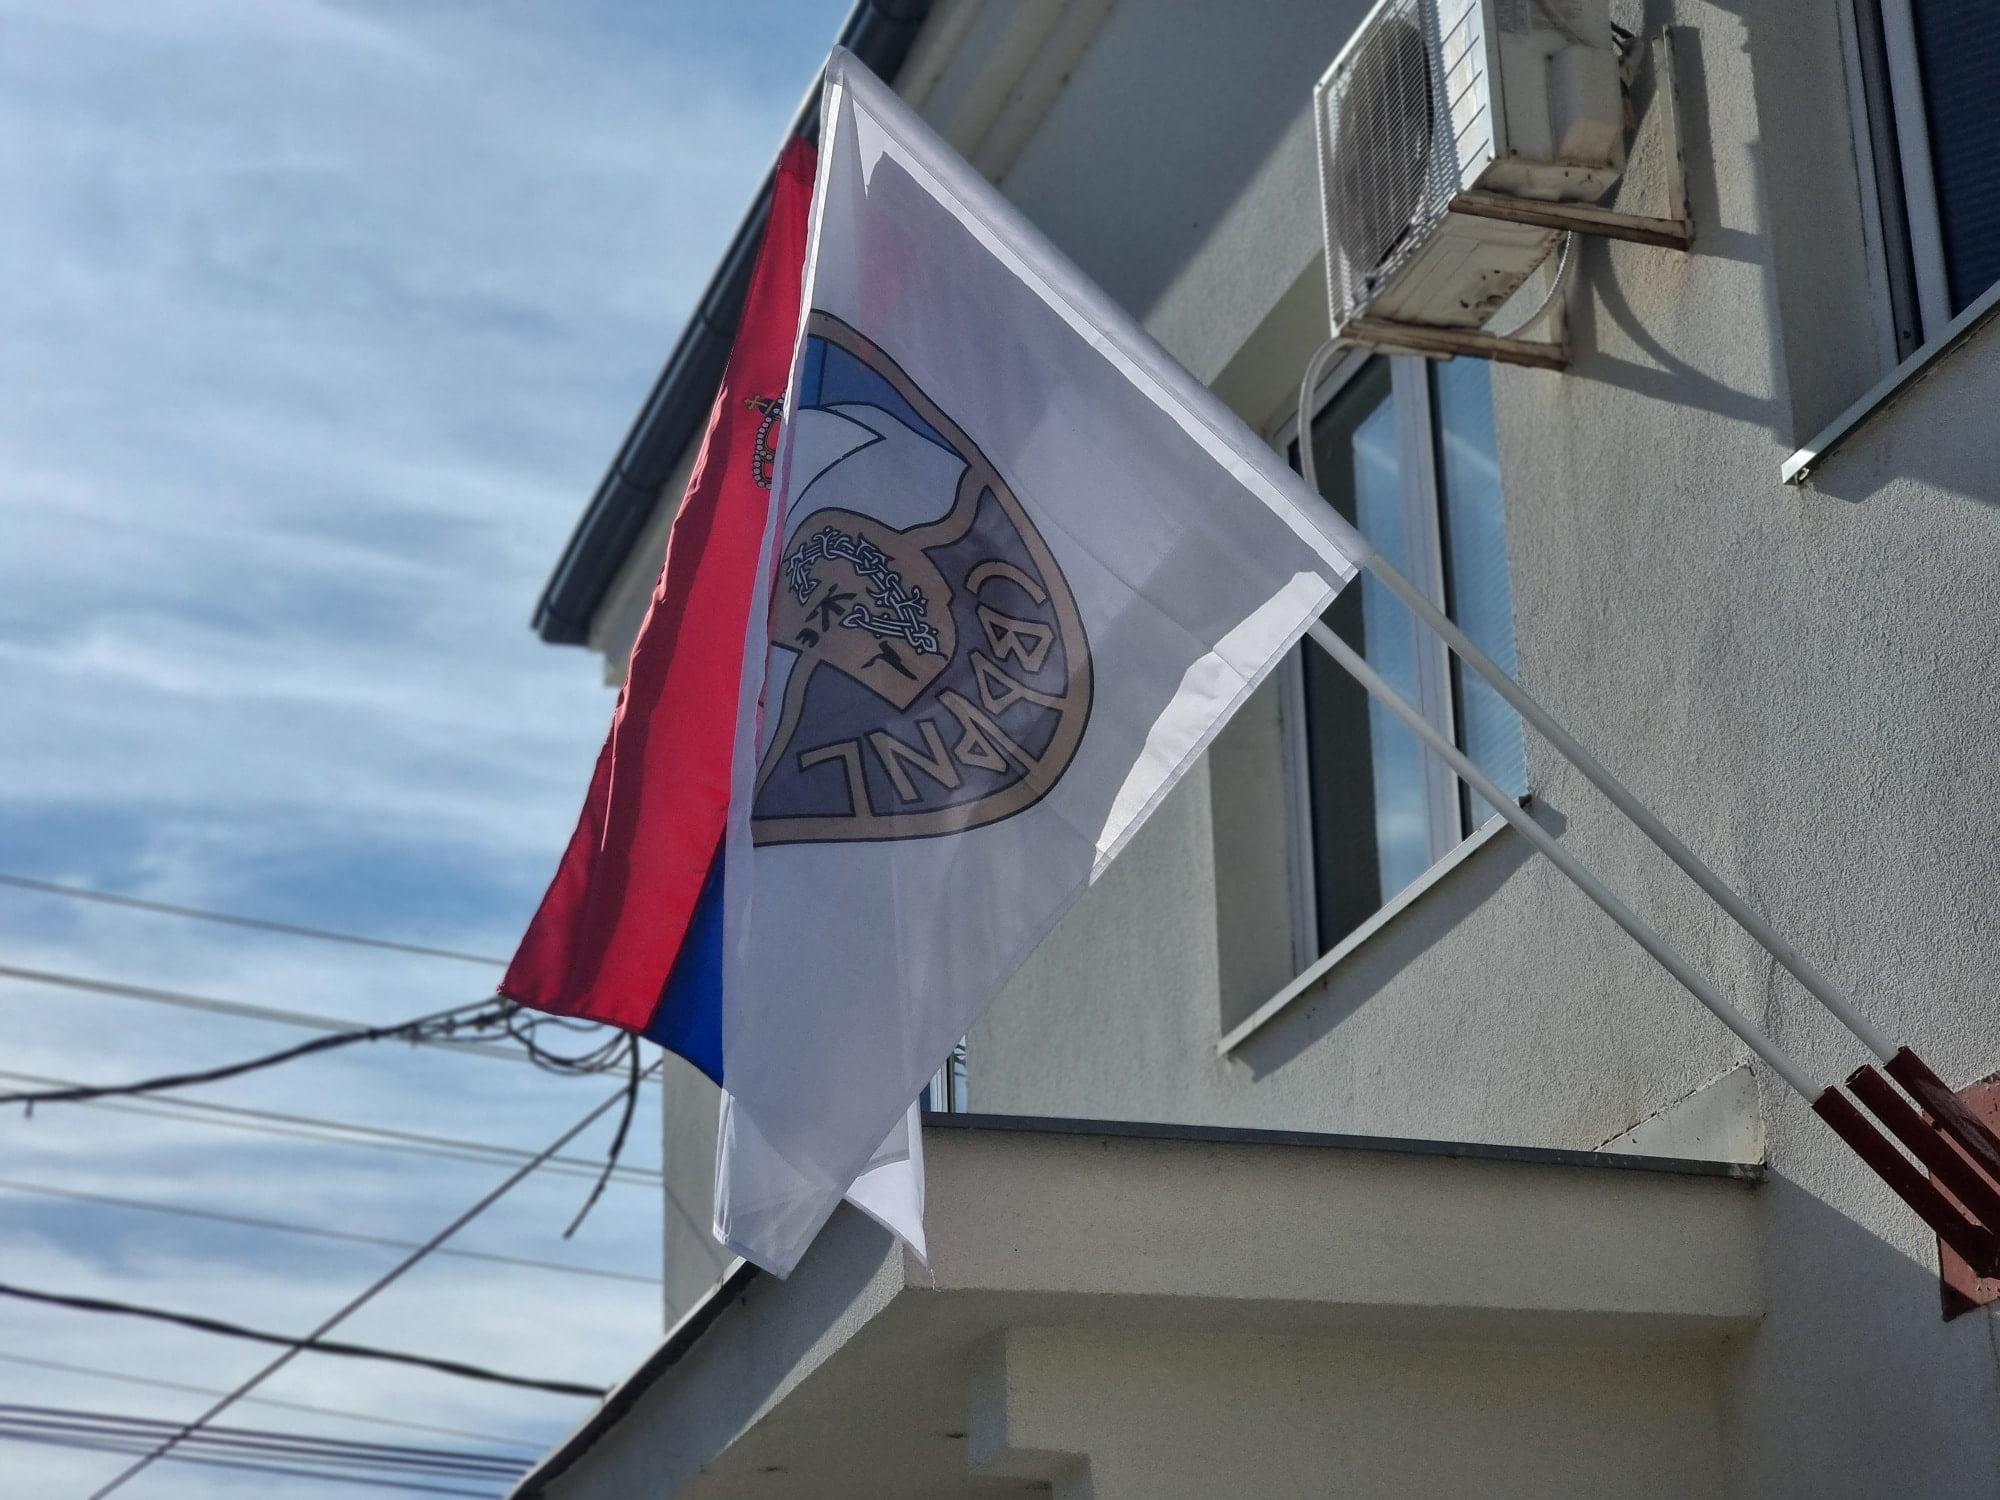 Opština Svrljig, zastava Srbije i Opštine, foto: M.M. / Radio Bubamara Svrljig